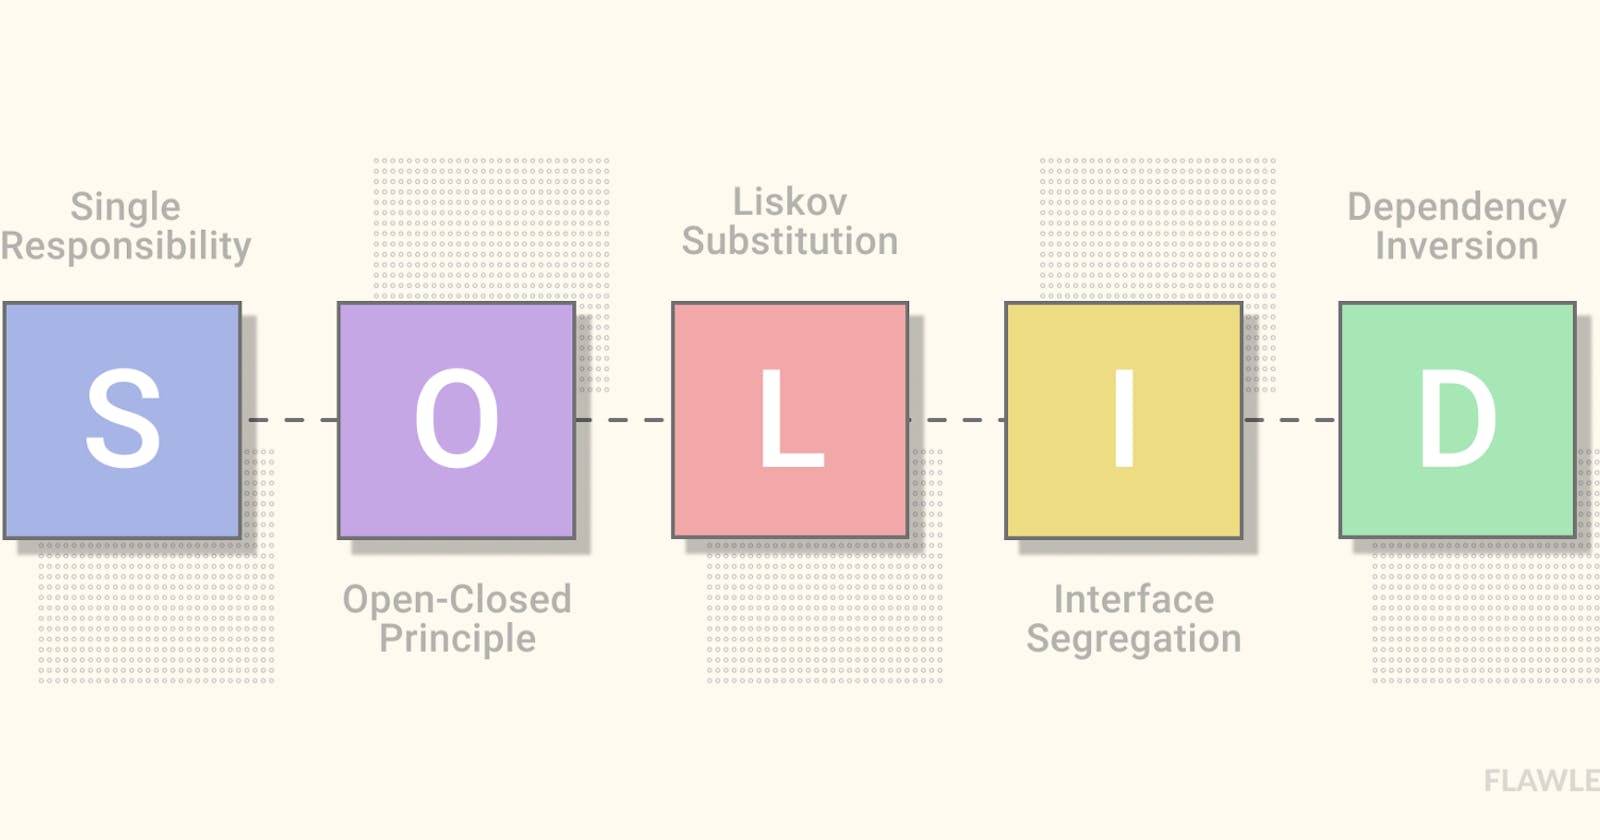 3. Liskov Substitution in [S.O.L.I.D] Principles.